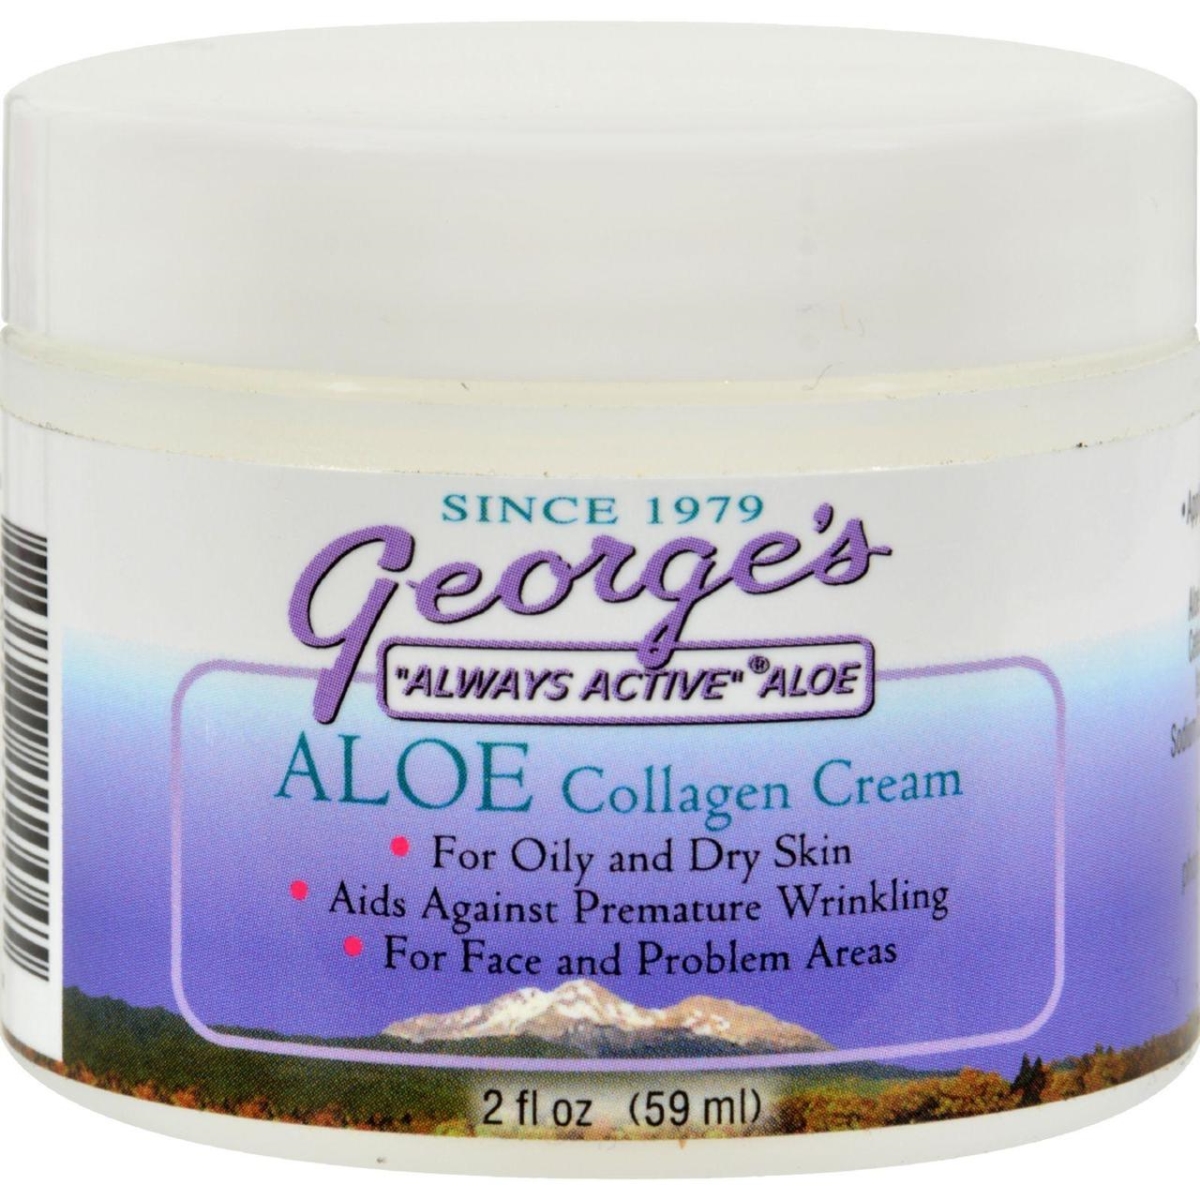 Hg0616433 2 Oz Collagen Cream